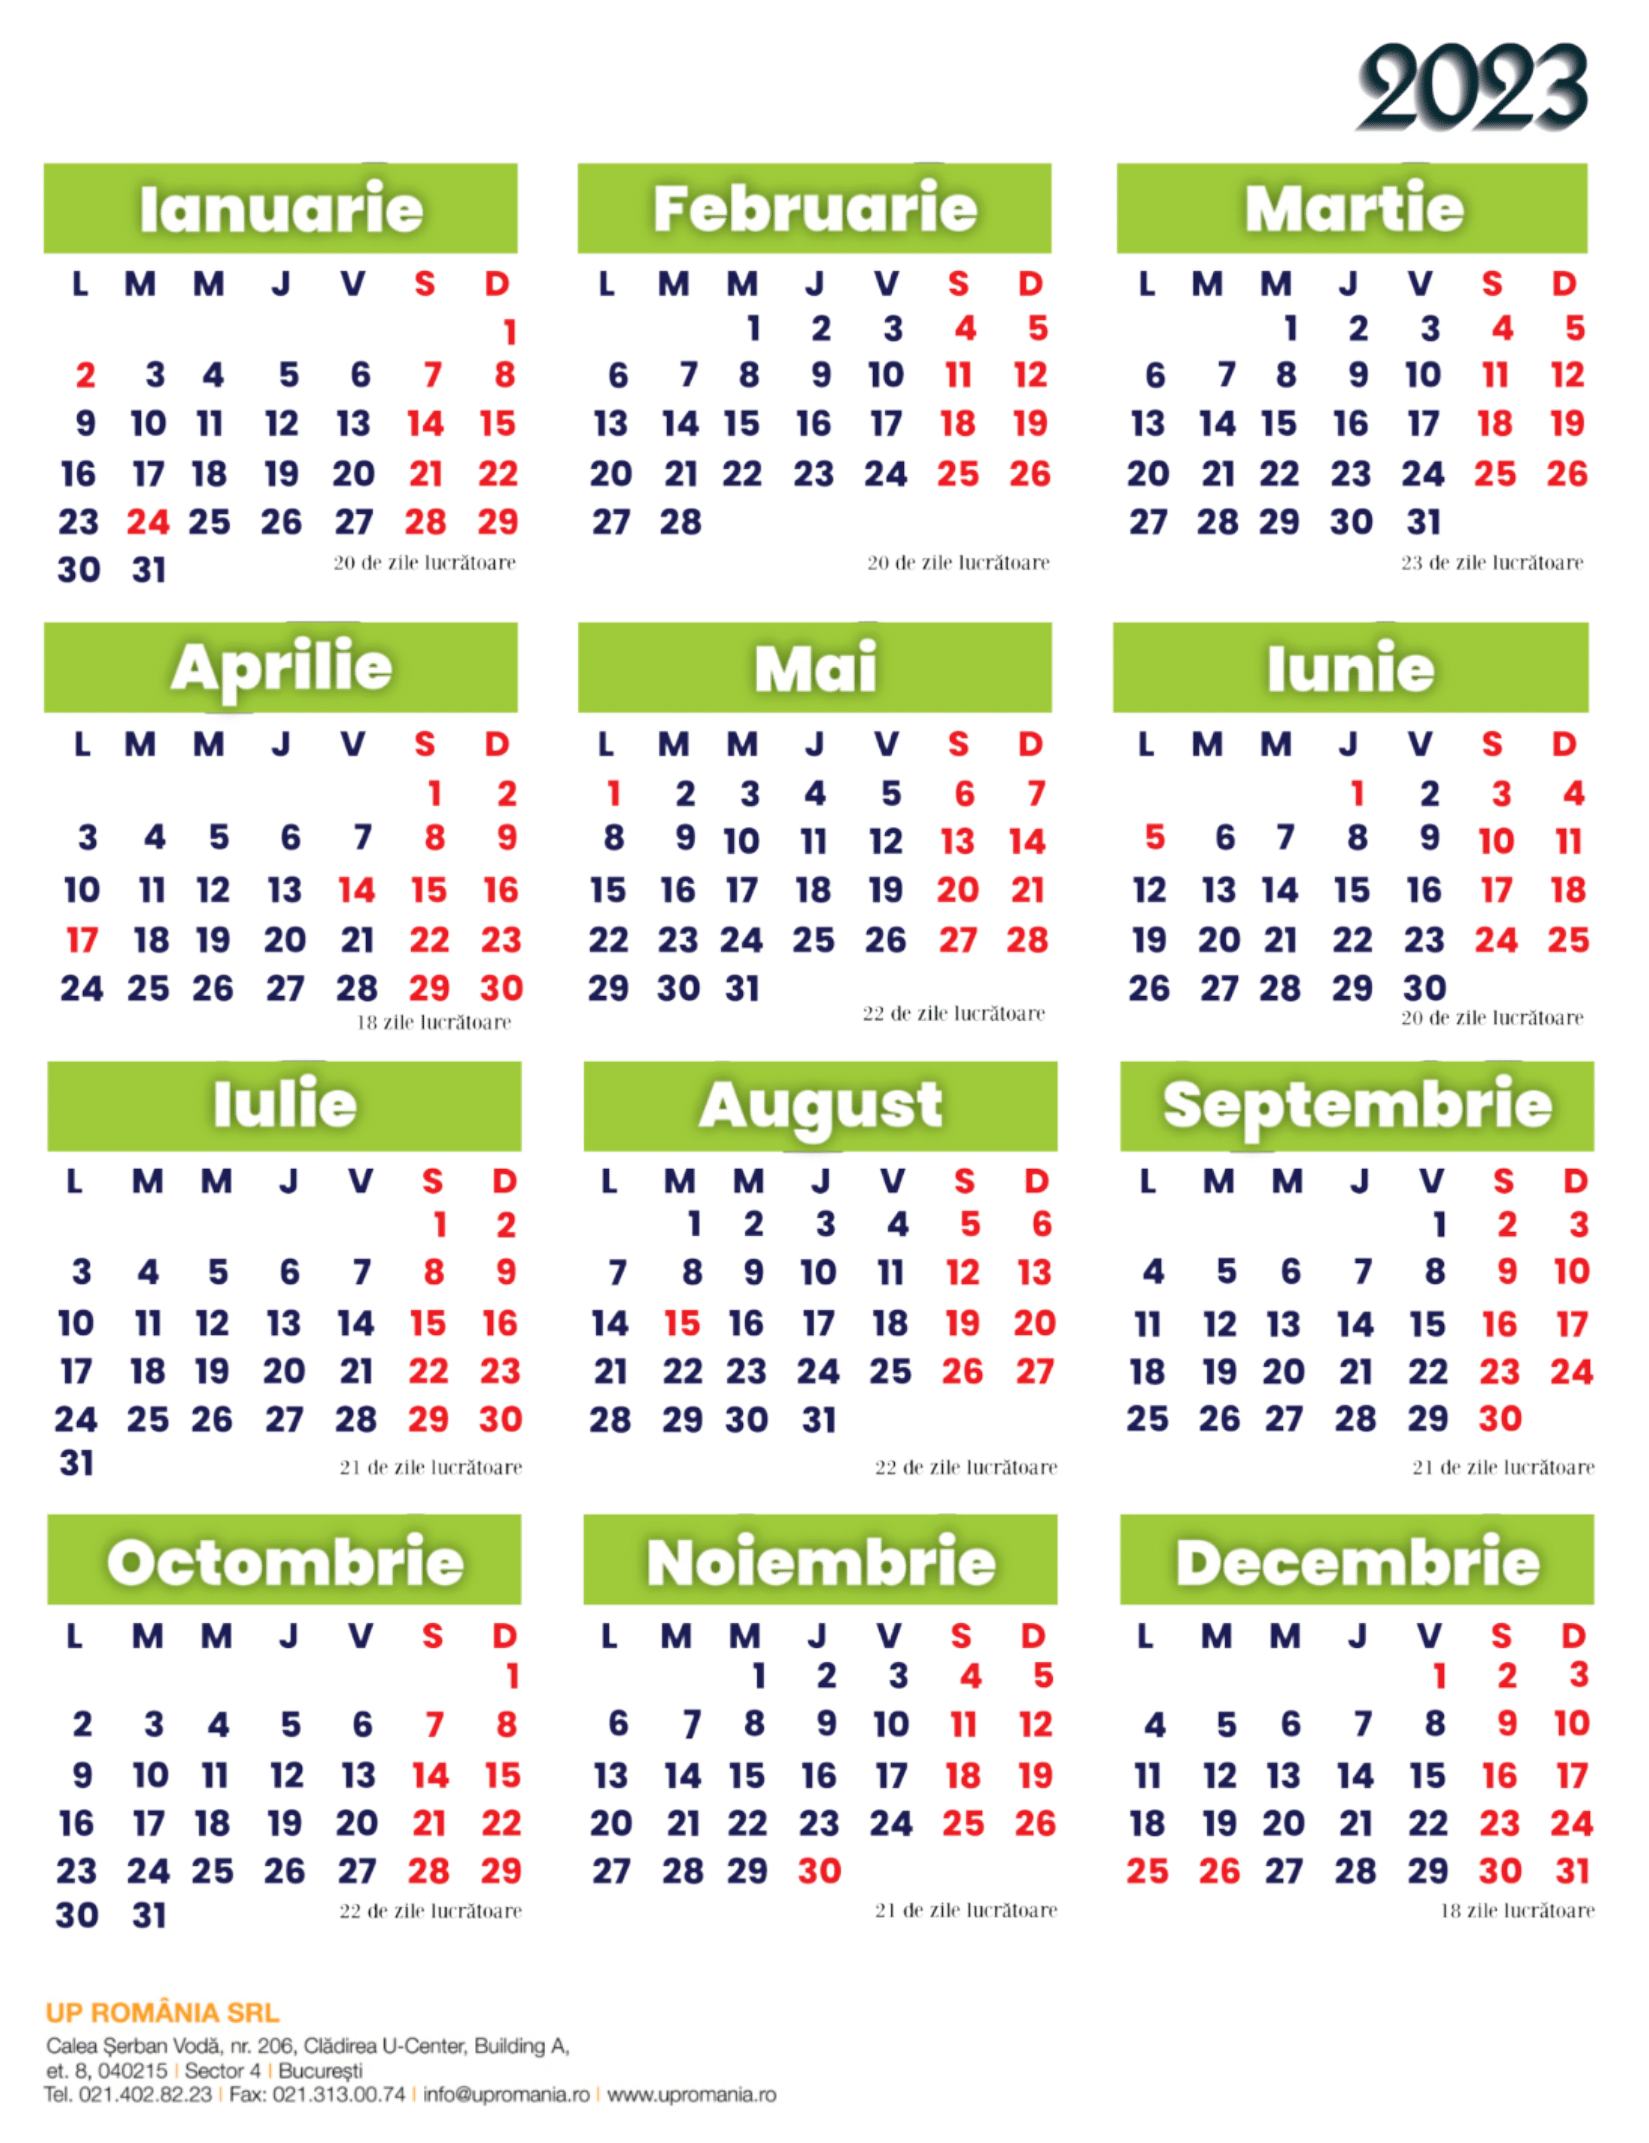 calendar-zile-lucratoare-2023-up-romania